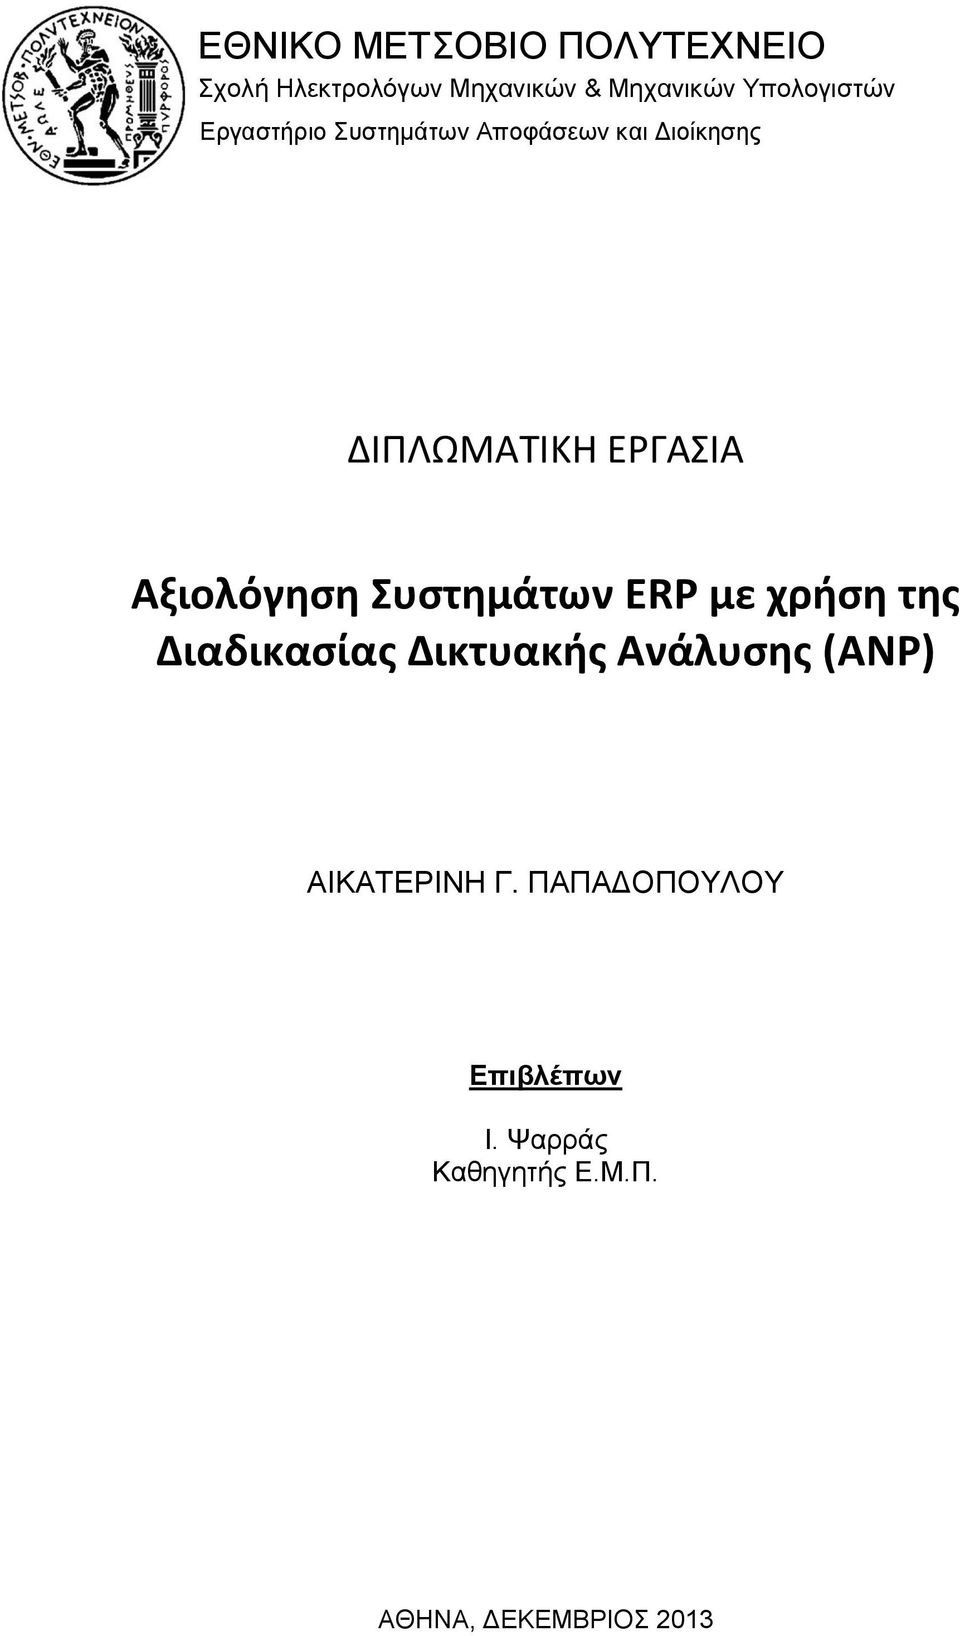 Αξιολόγηση Συστημάτων ERP με χρήση της Διαδικασίας Δικτυακής Ανάλυσης (ANP)